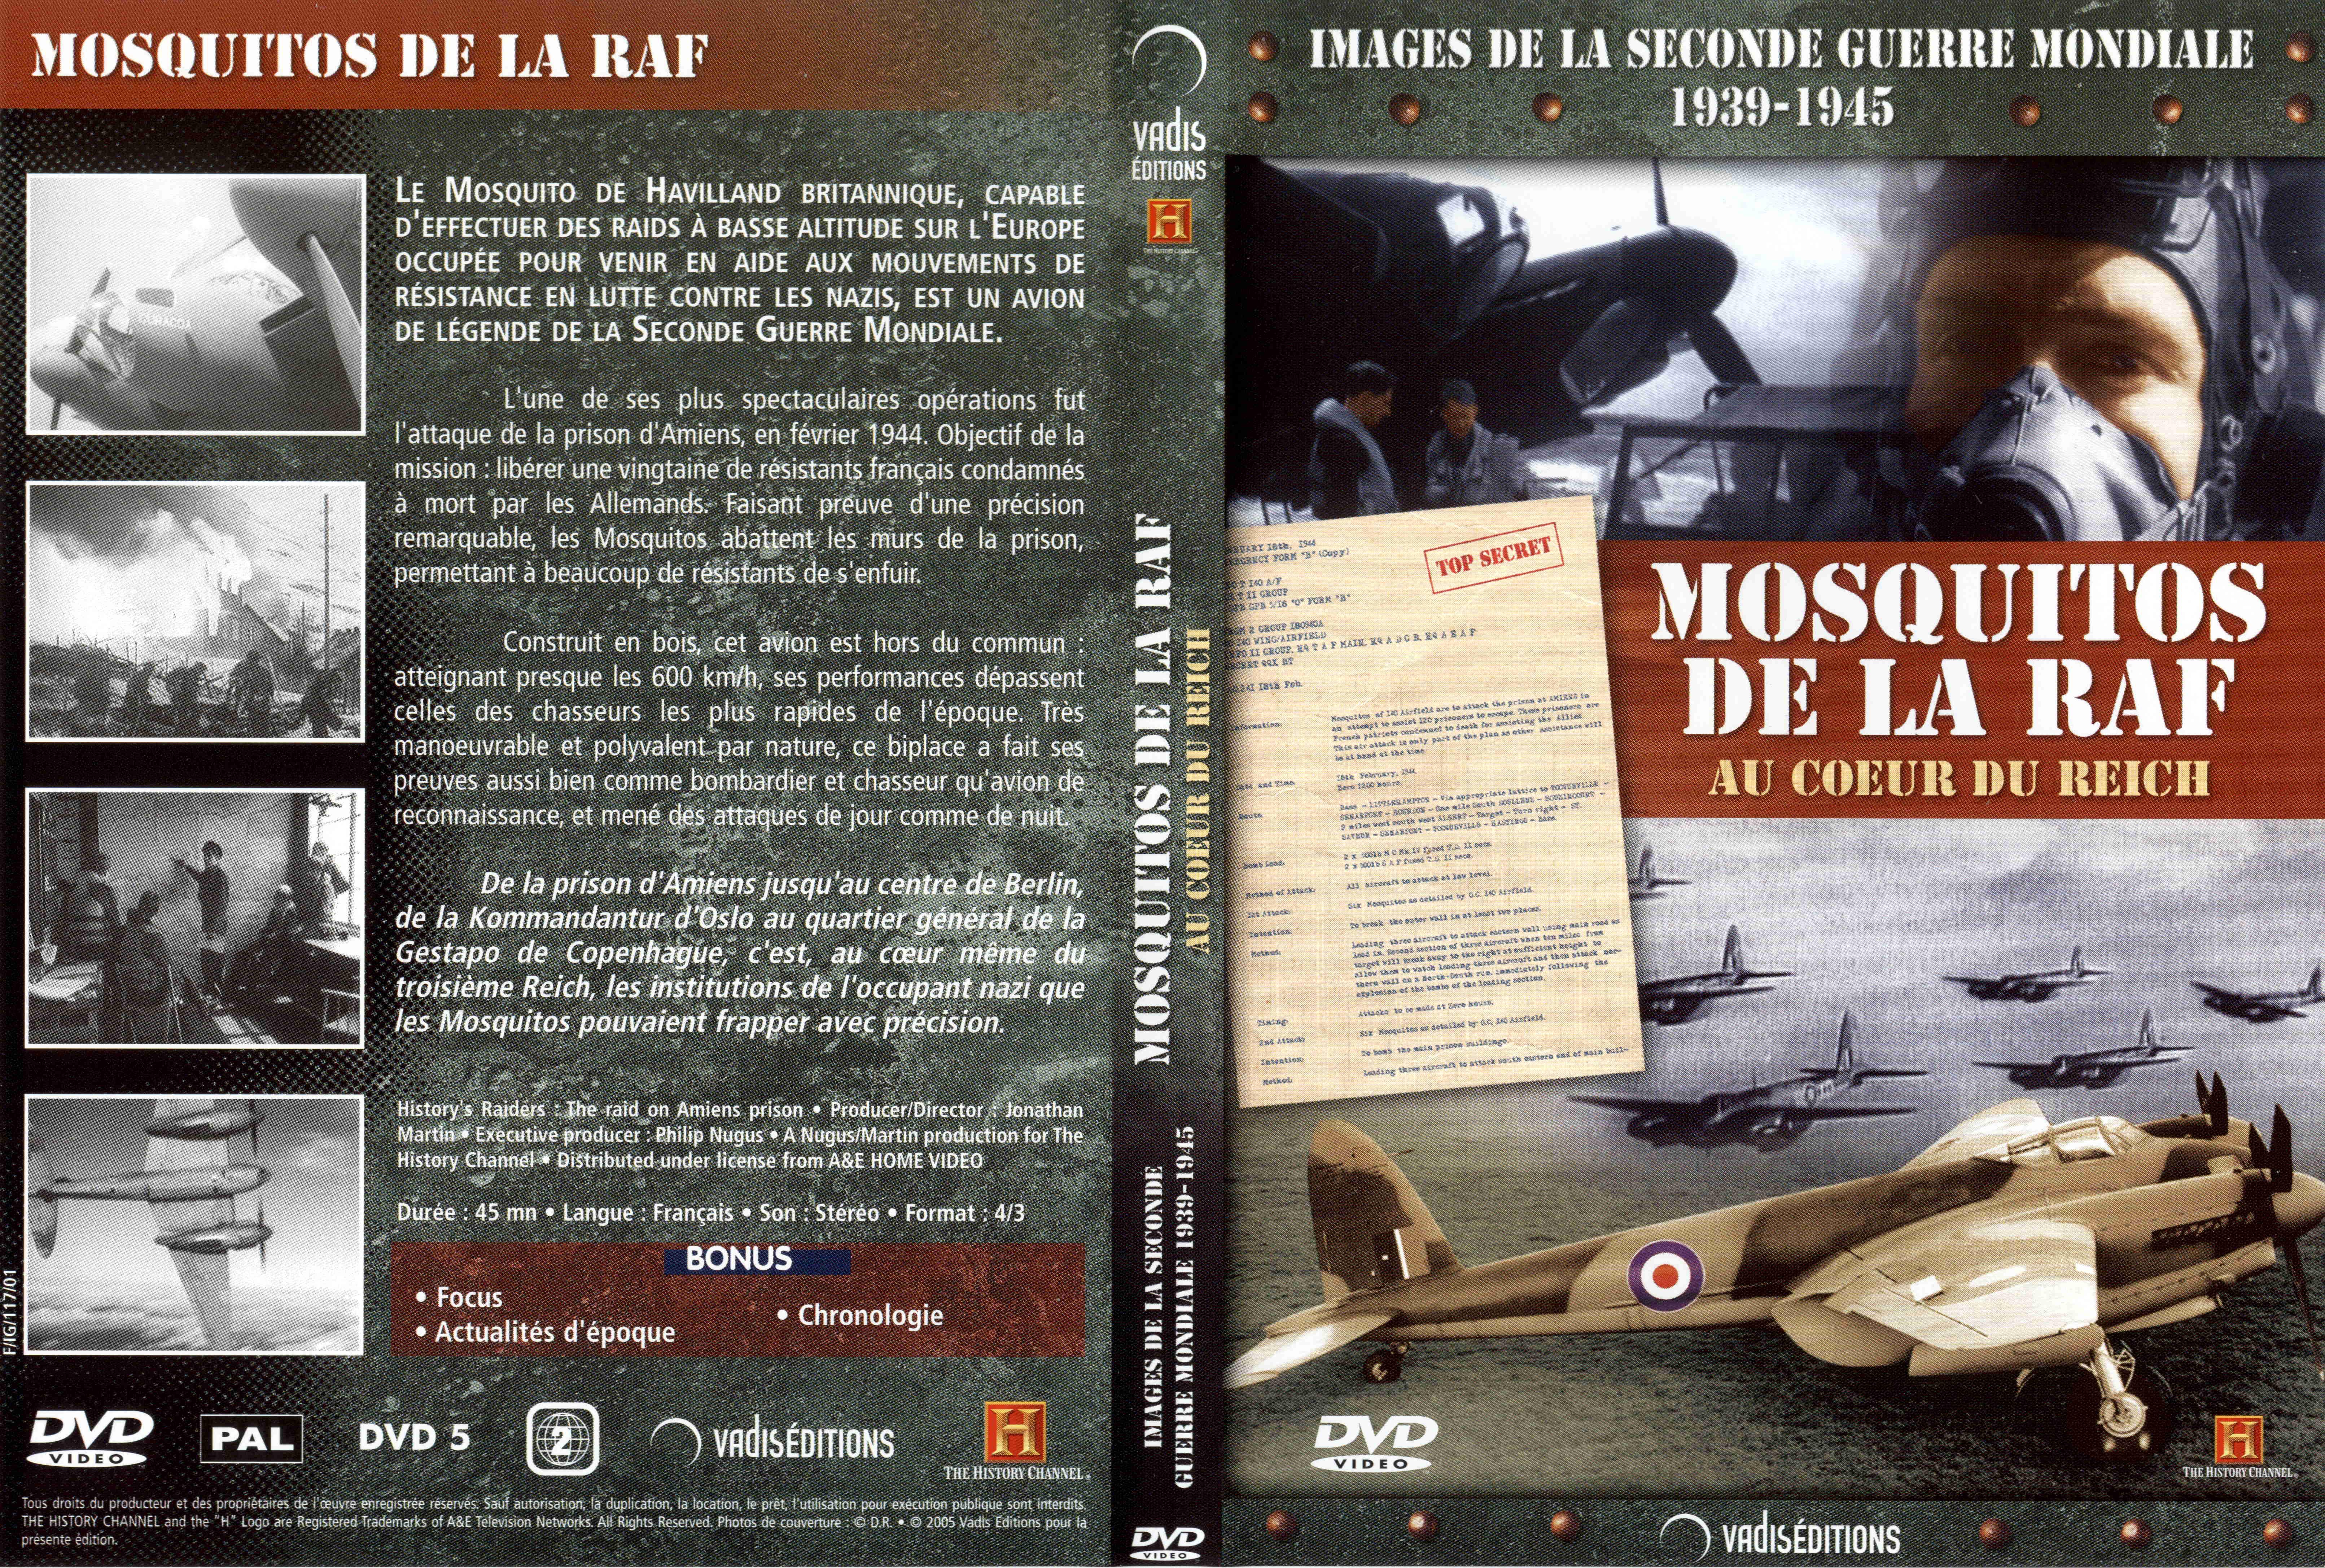 Jaquette DVD Images de la seconde guerre mondiale - Mosquitos de la RAF